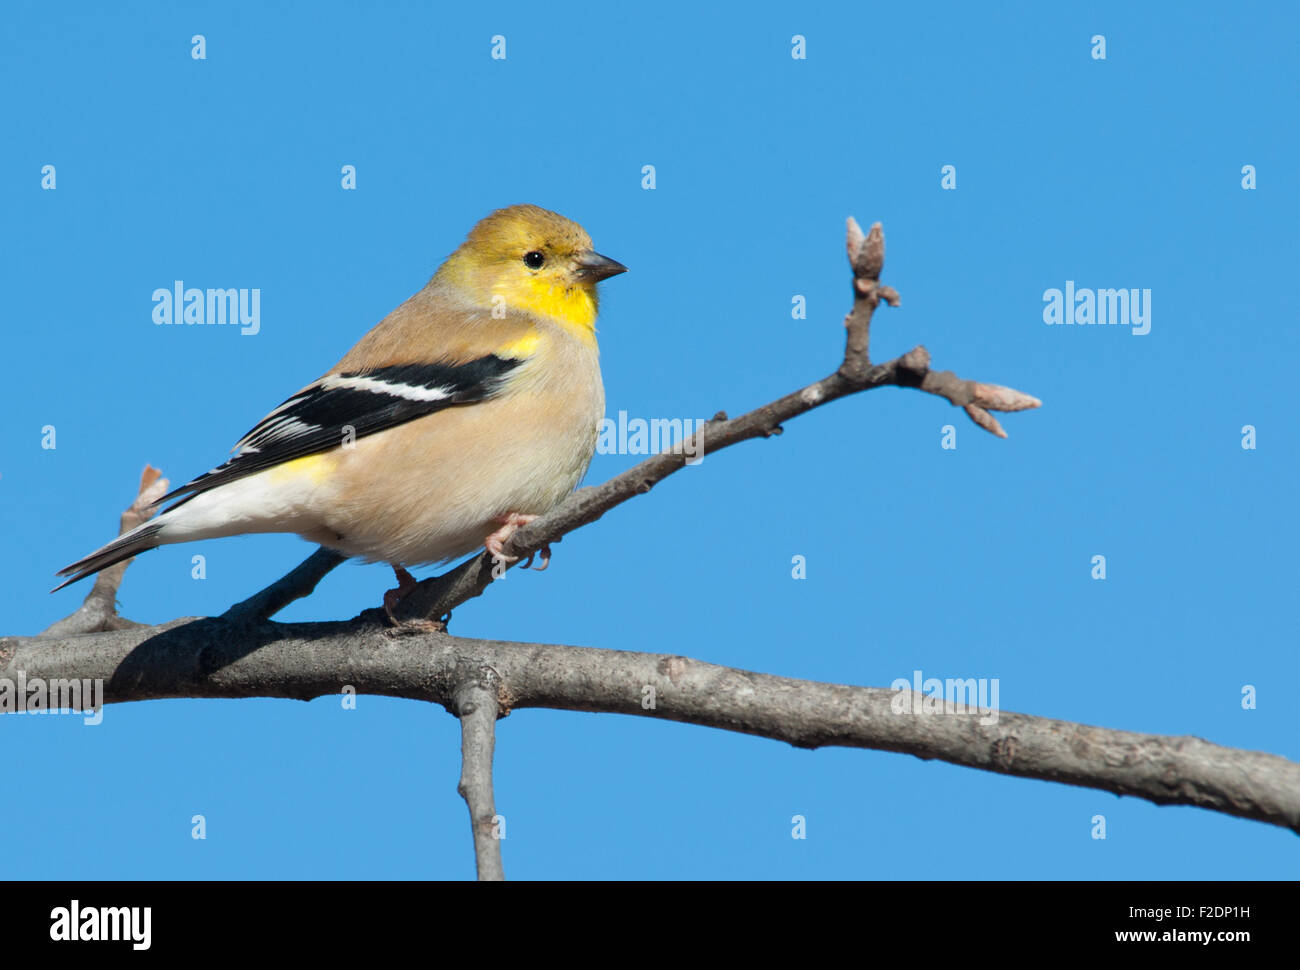 Male American Goldfinch in winter plumage in an Oak tree against clear blue winter sky Stock Photo